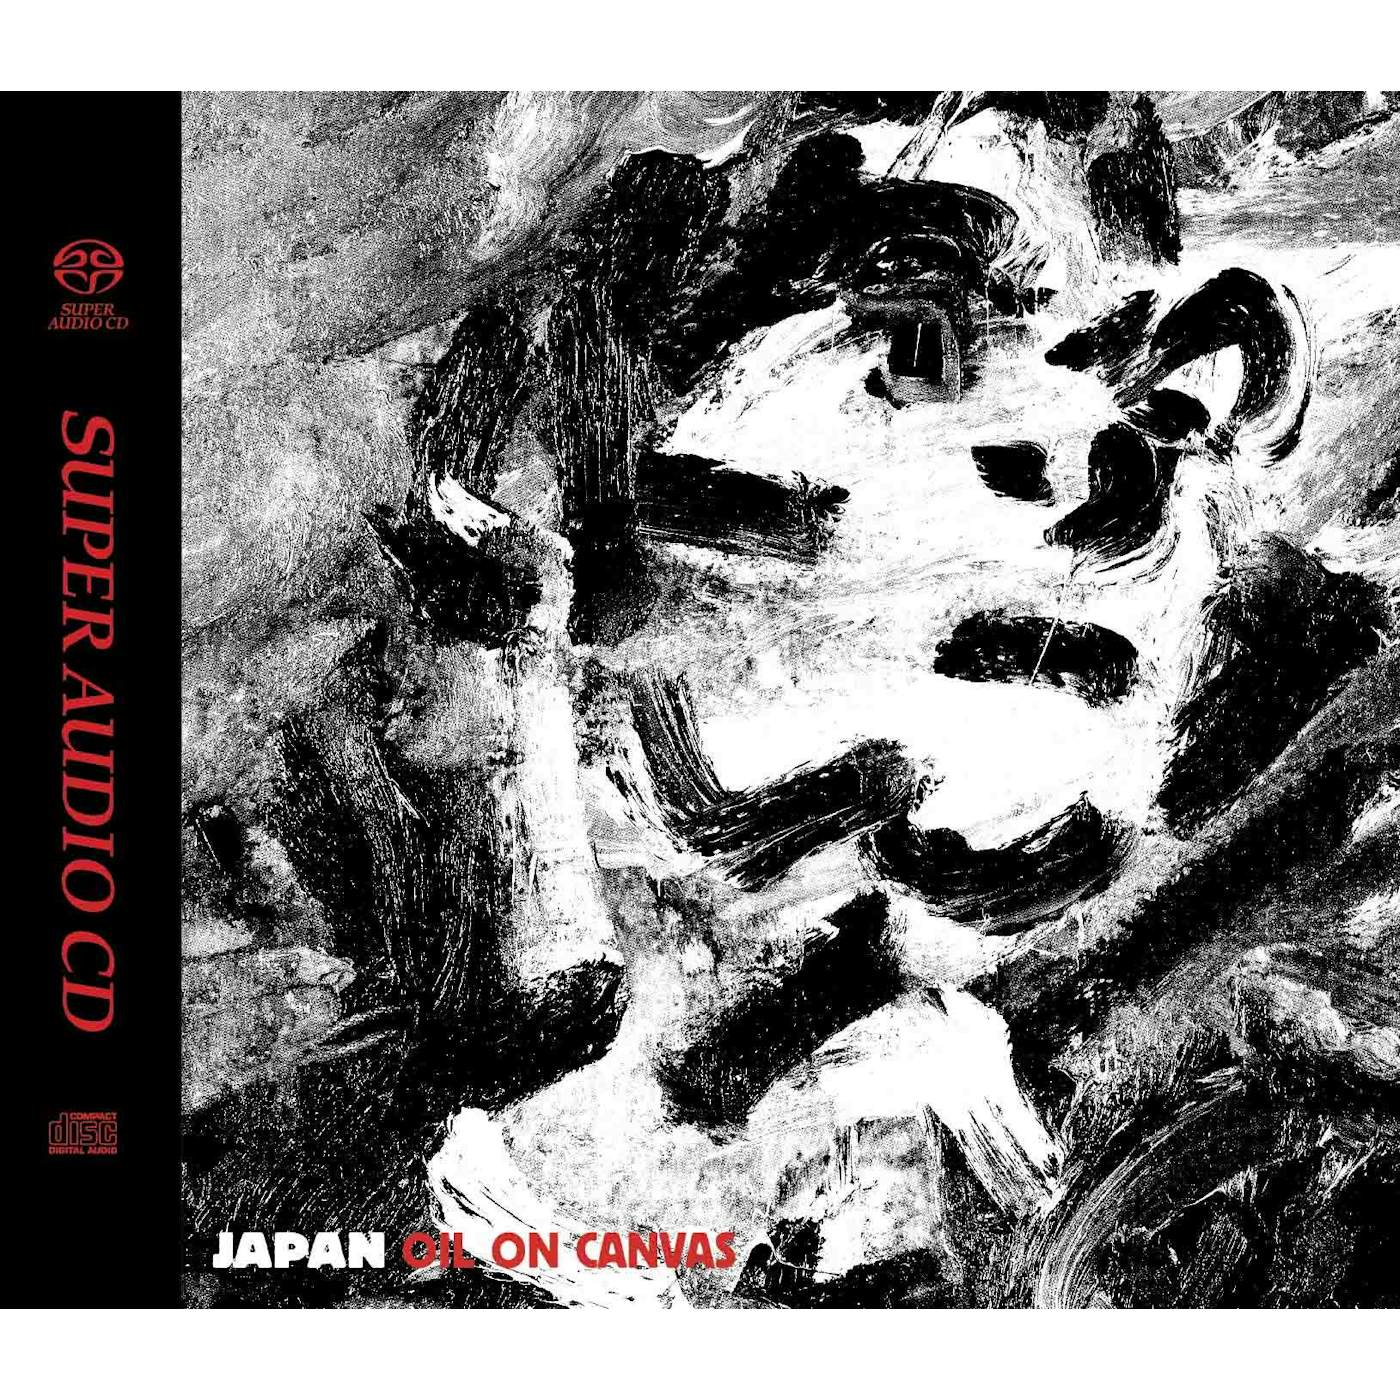 Japan OIL ON CANVAS (HYBRID-SACD) Super Audio CD